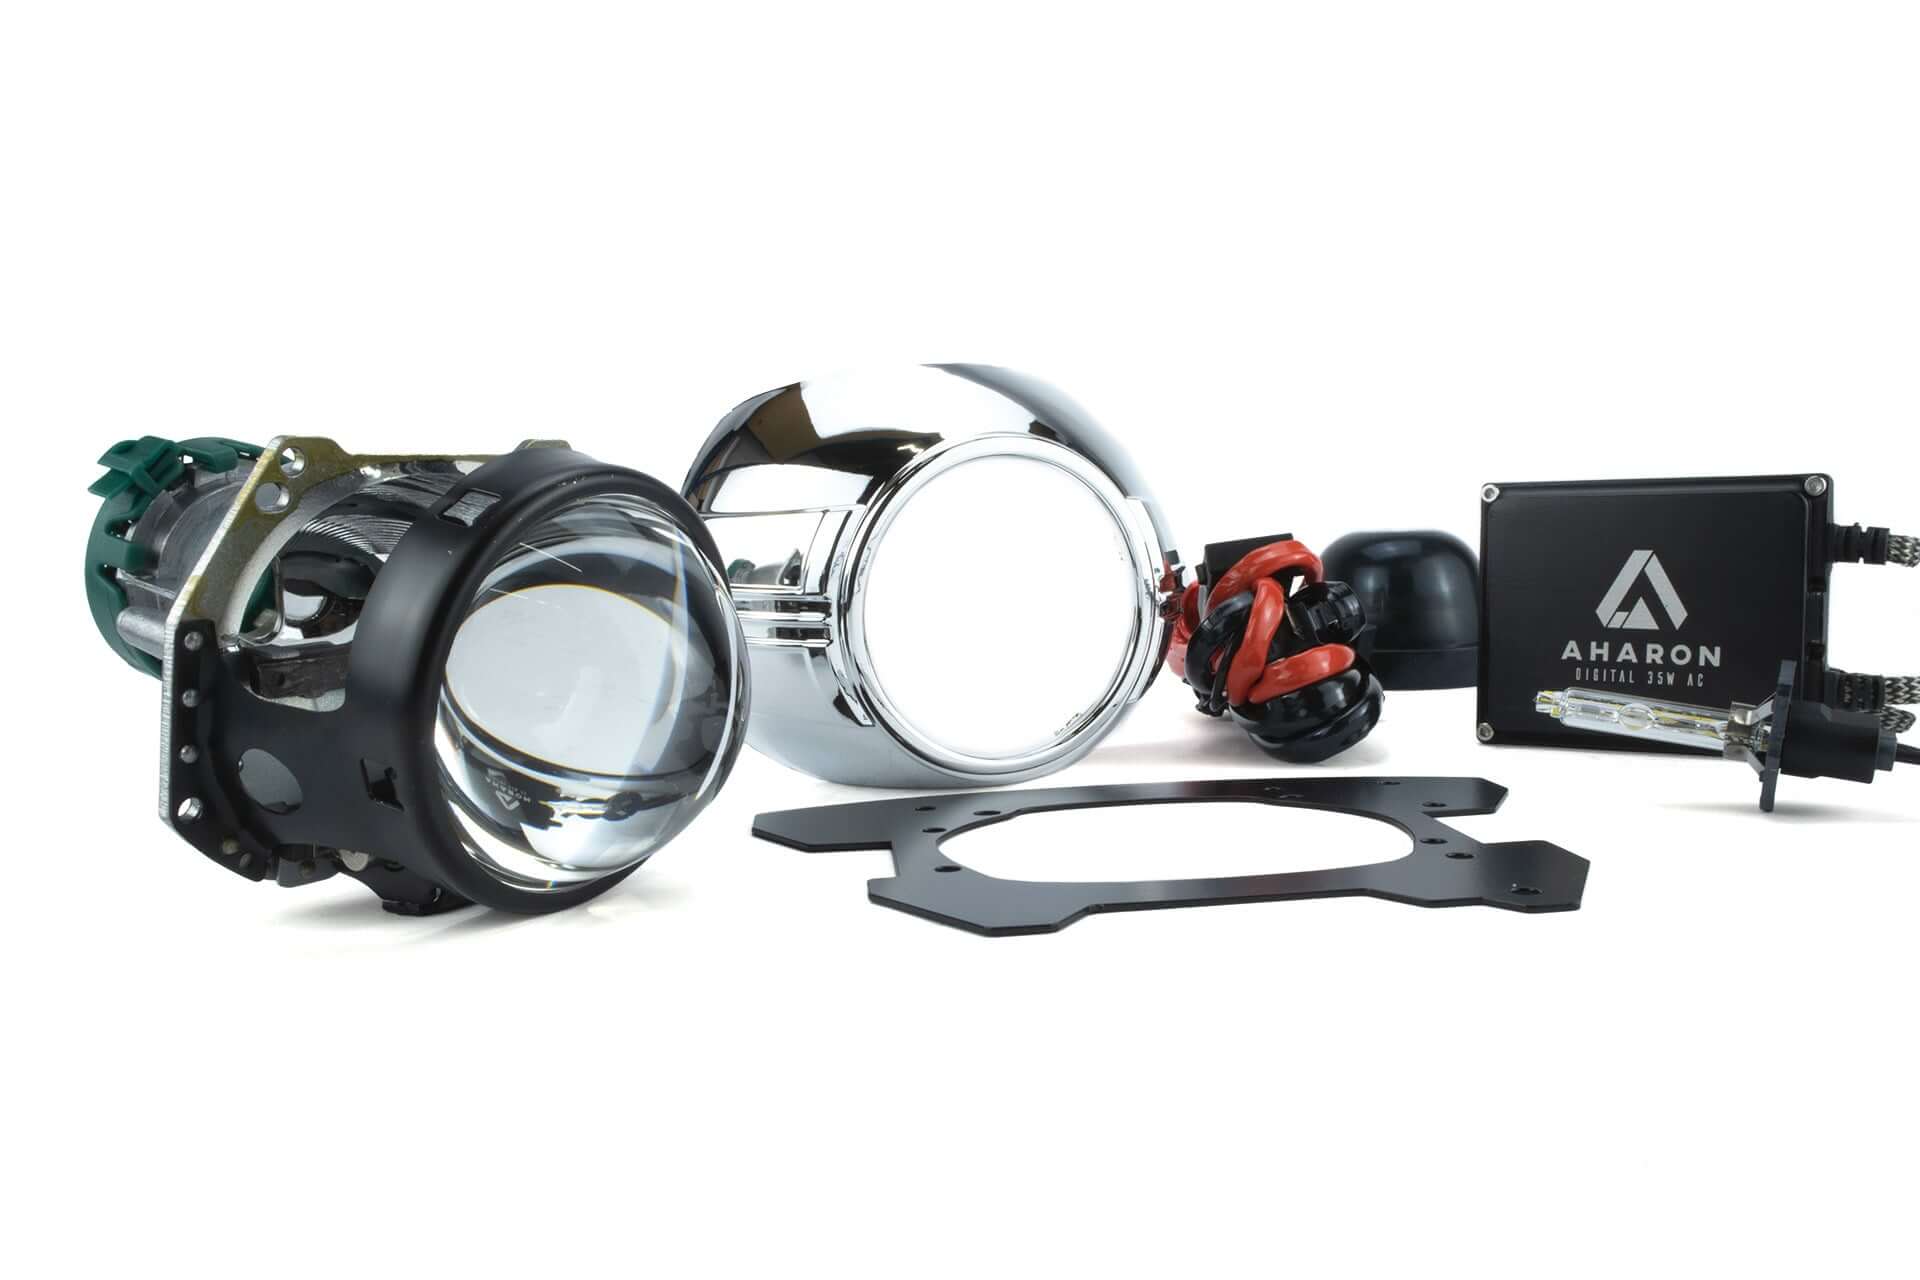 Yamaha MT-07 FZ-07 (2014-2017) bi-xenon koplamp licht upgrade kit